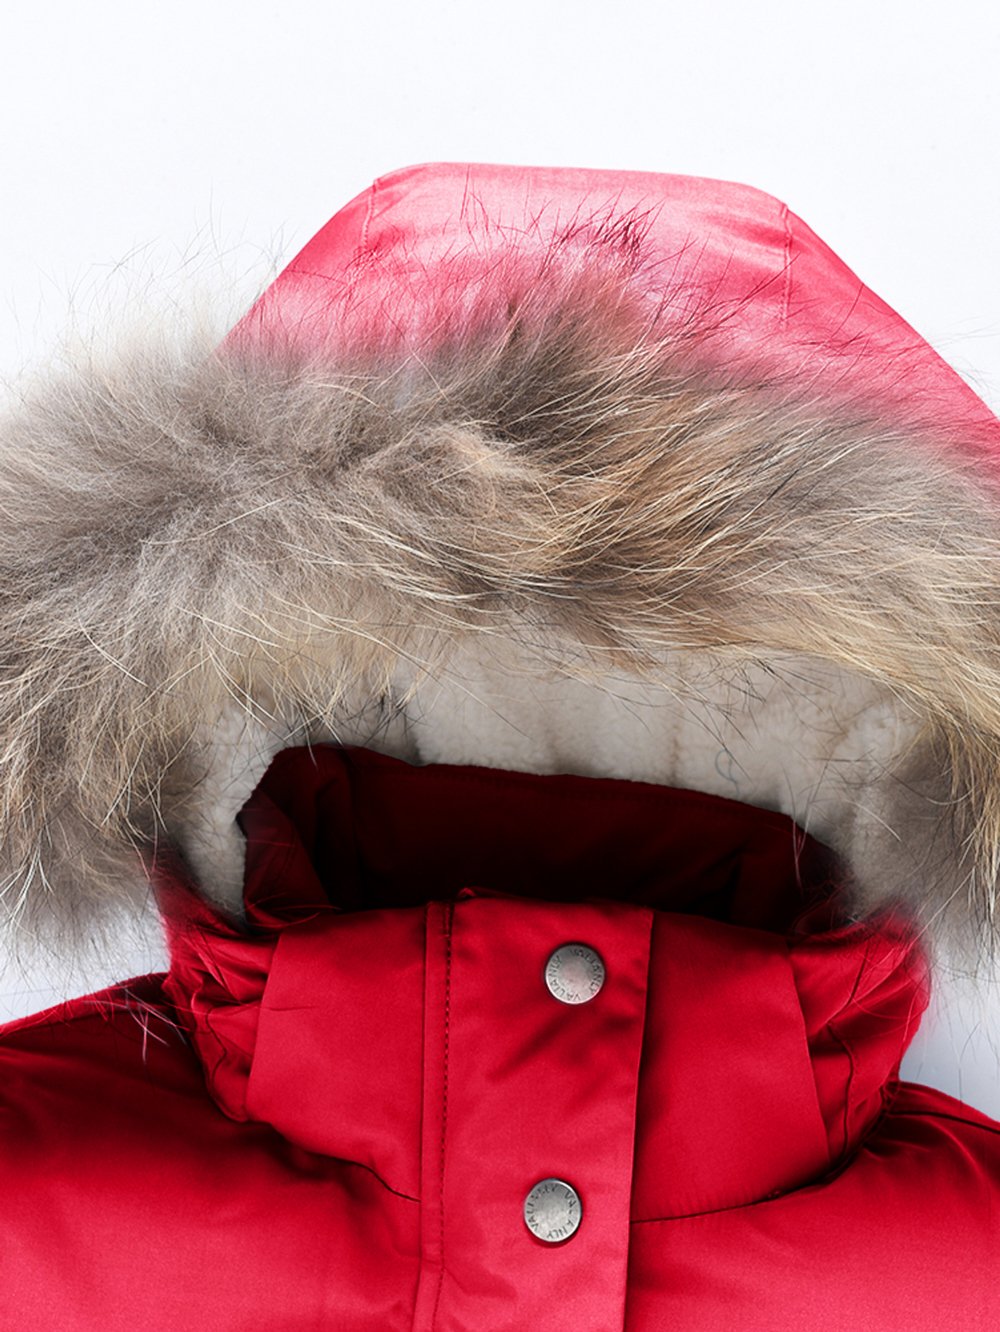 Купить куртку парку для девочки оптом от производителя недорого в Москве 9332Kr 1